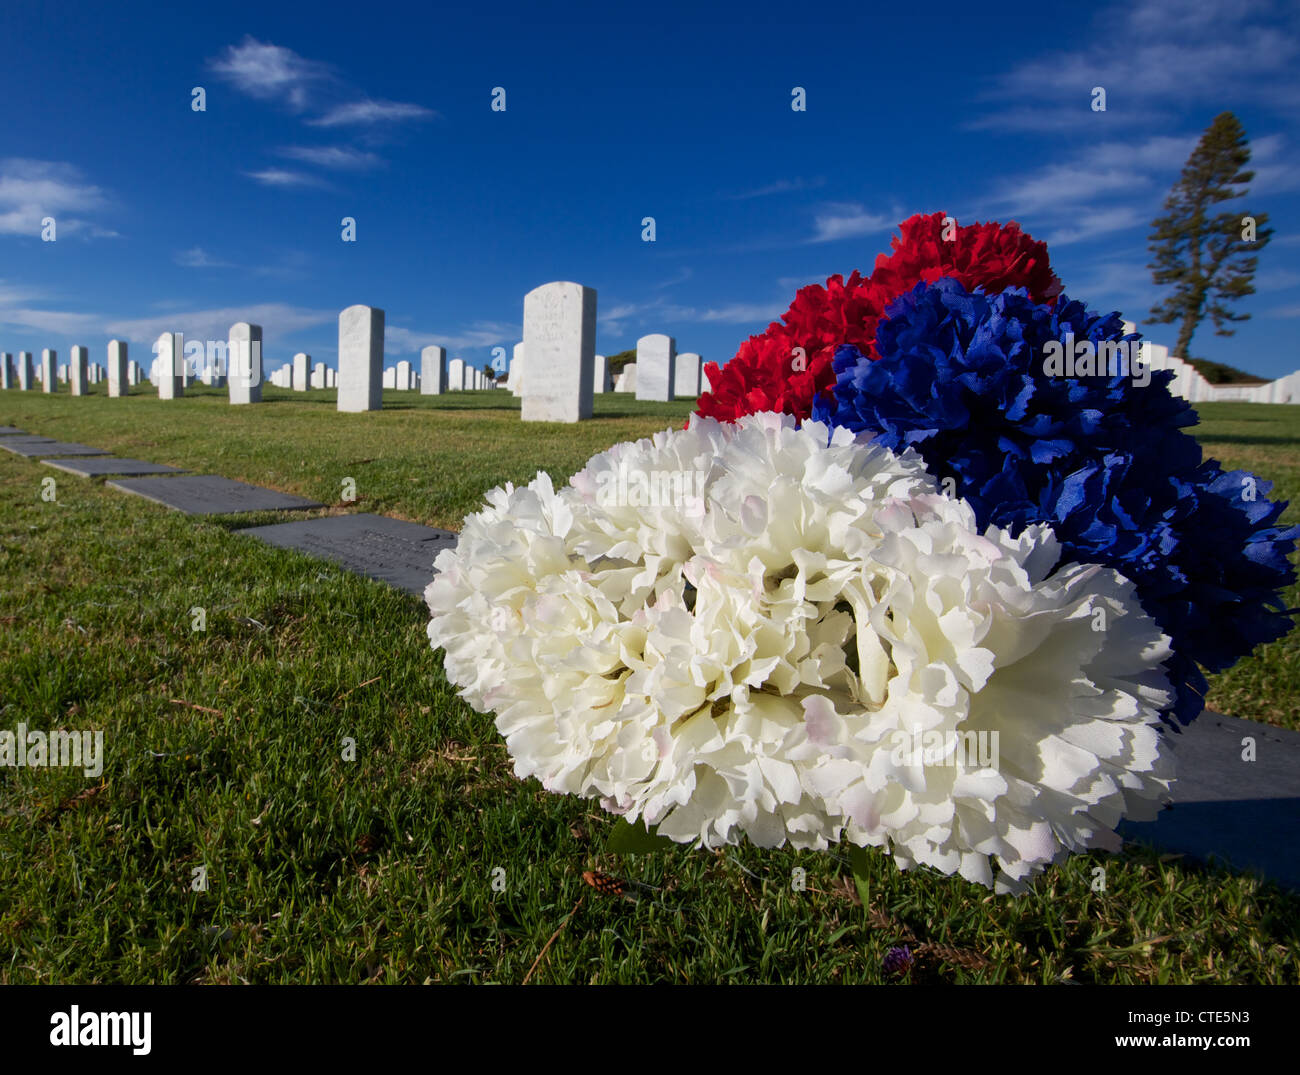 Bianco rosso e blues glowers sulla cima di una tomba di veterani di guerra Foto Stock